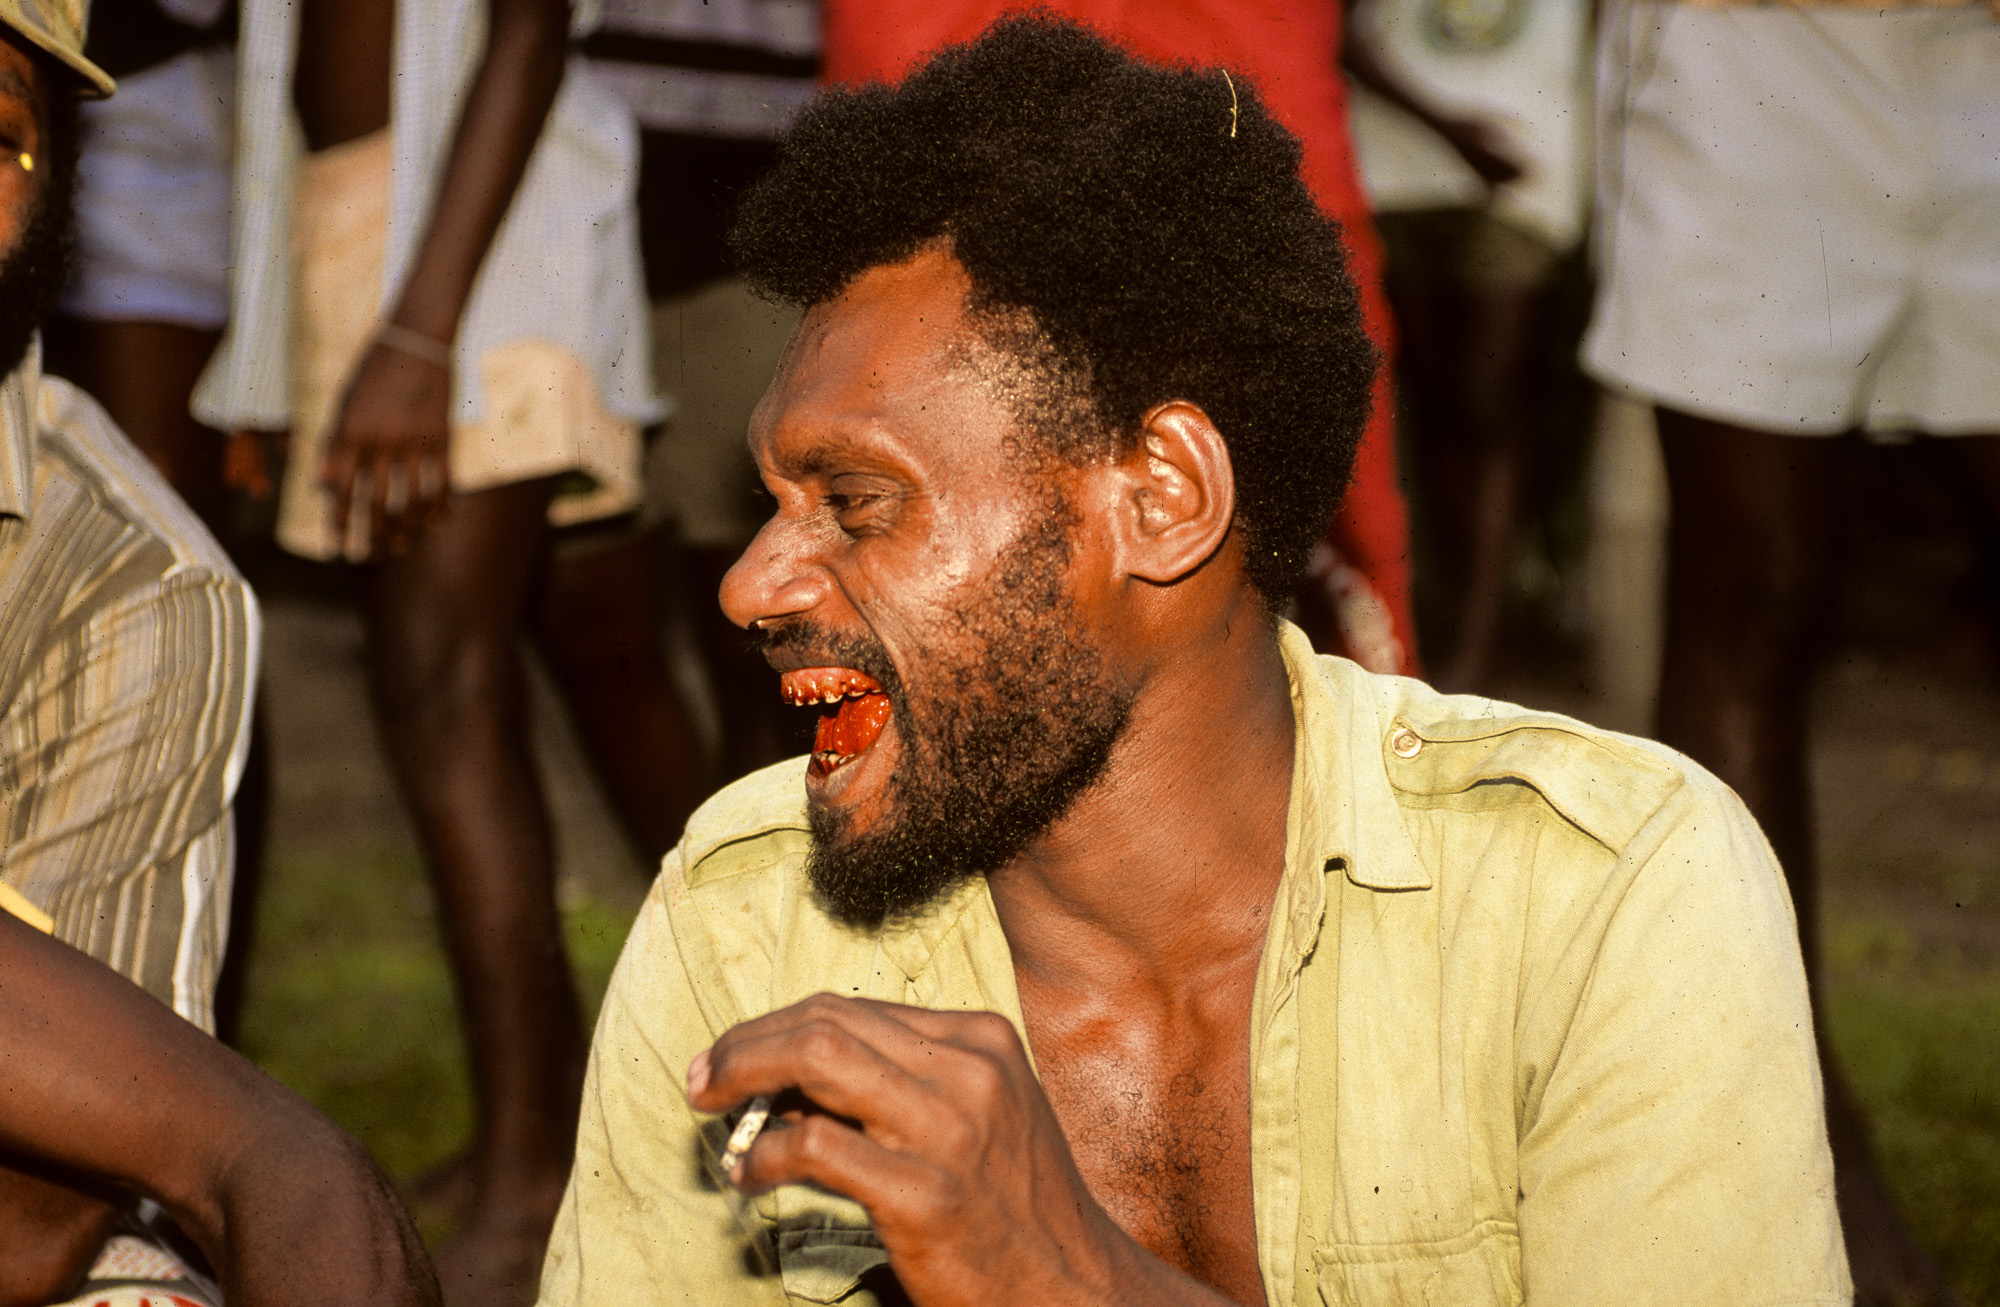 Nouvelle Guinée Papouasie. Rabaul, tribu des Tolaï. Cet habitant a les lèvres en sang car il mache du bétel additionné de chaux vive.